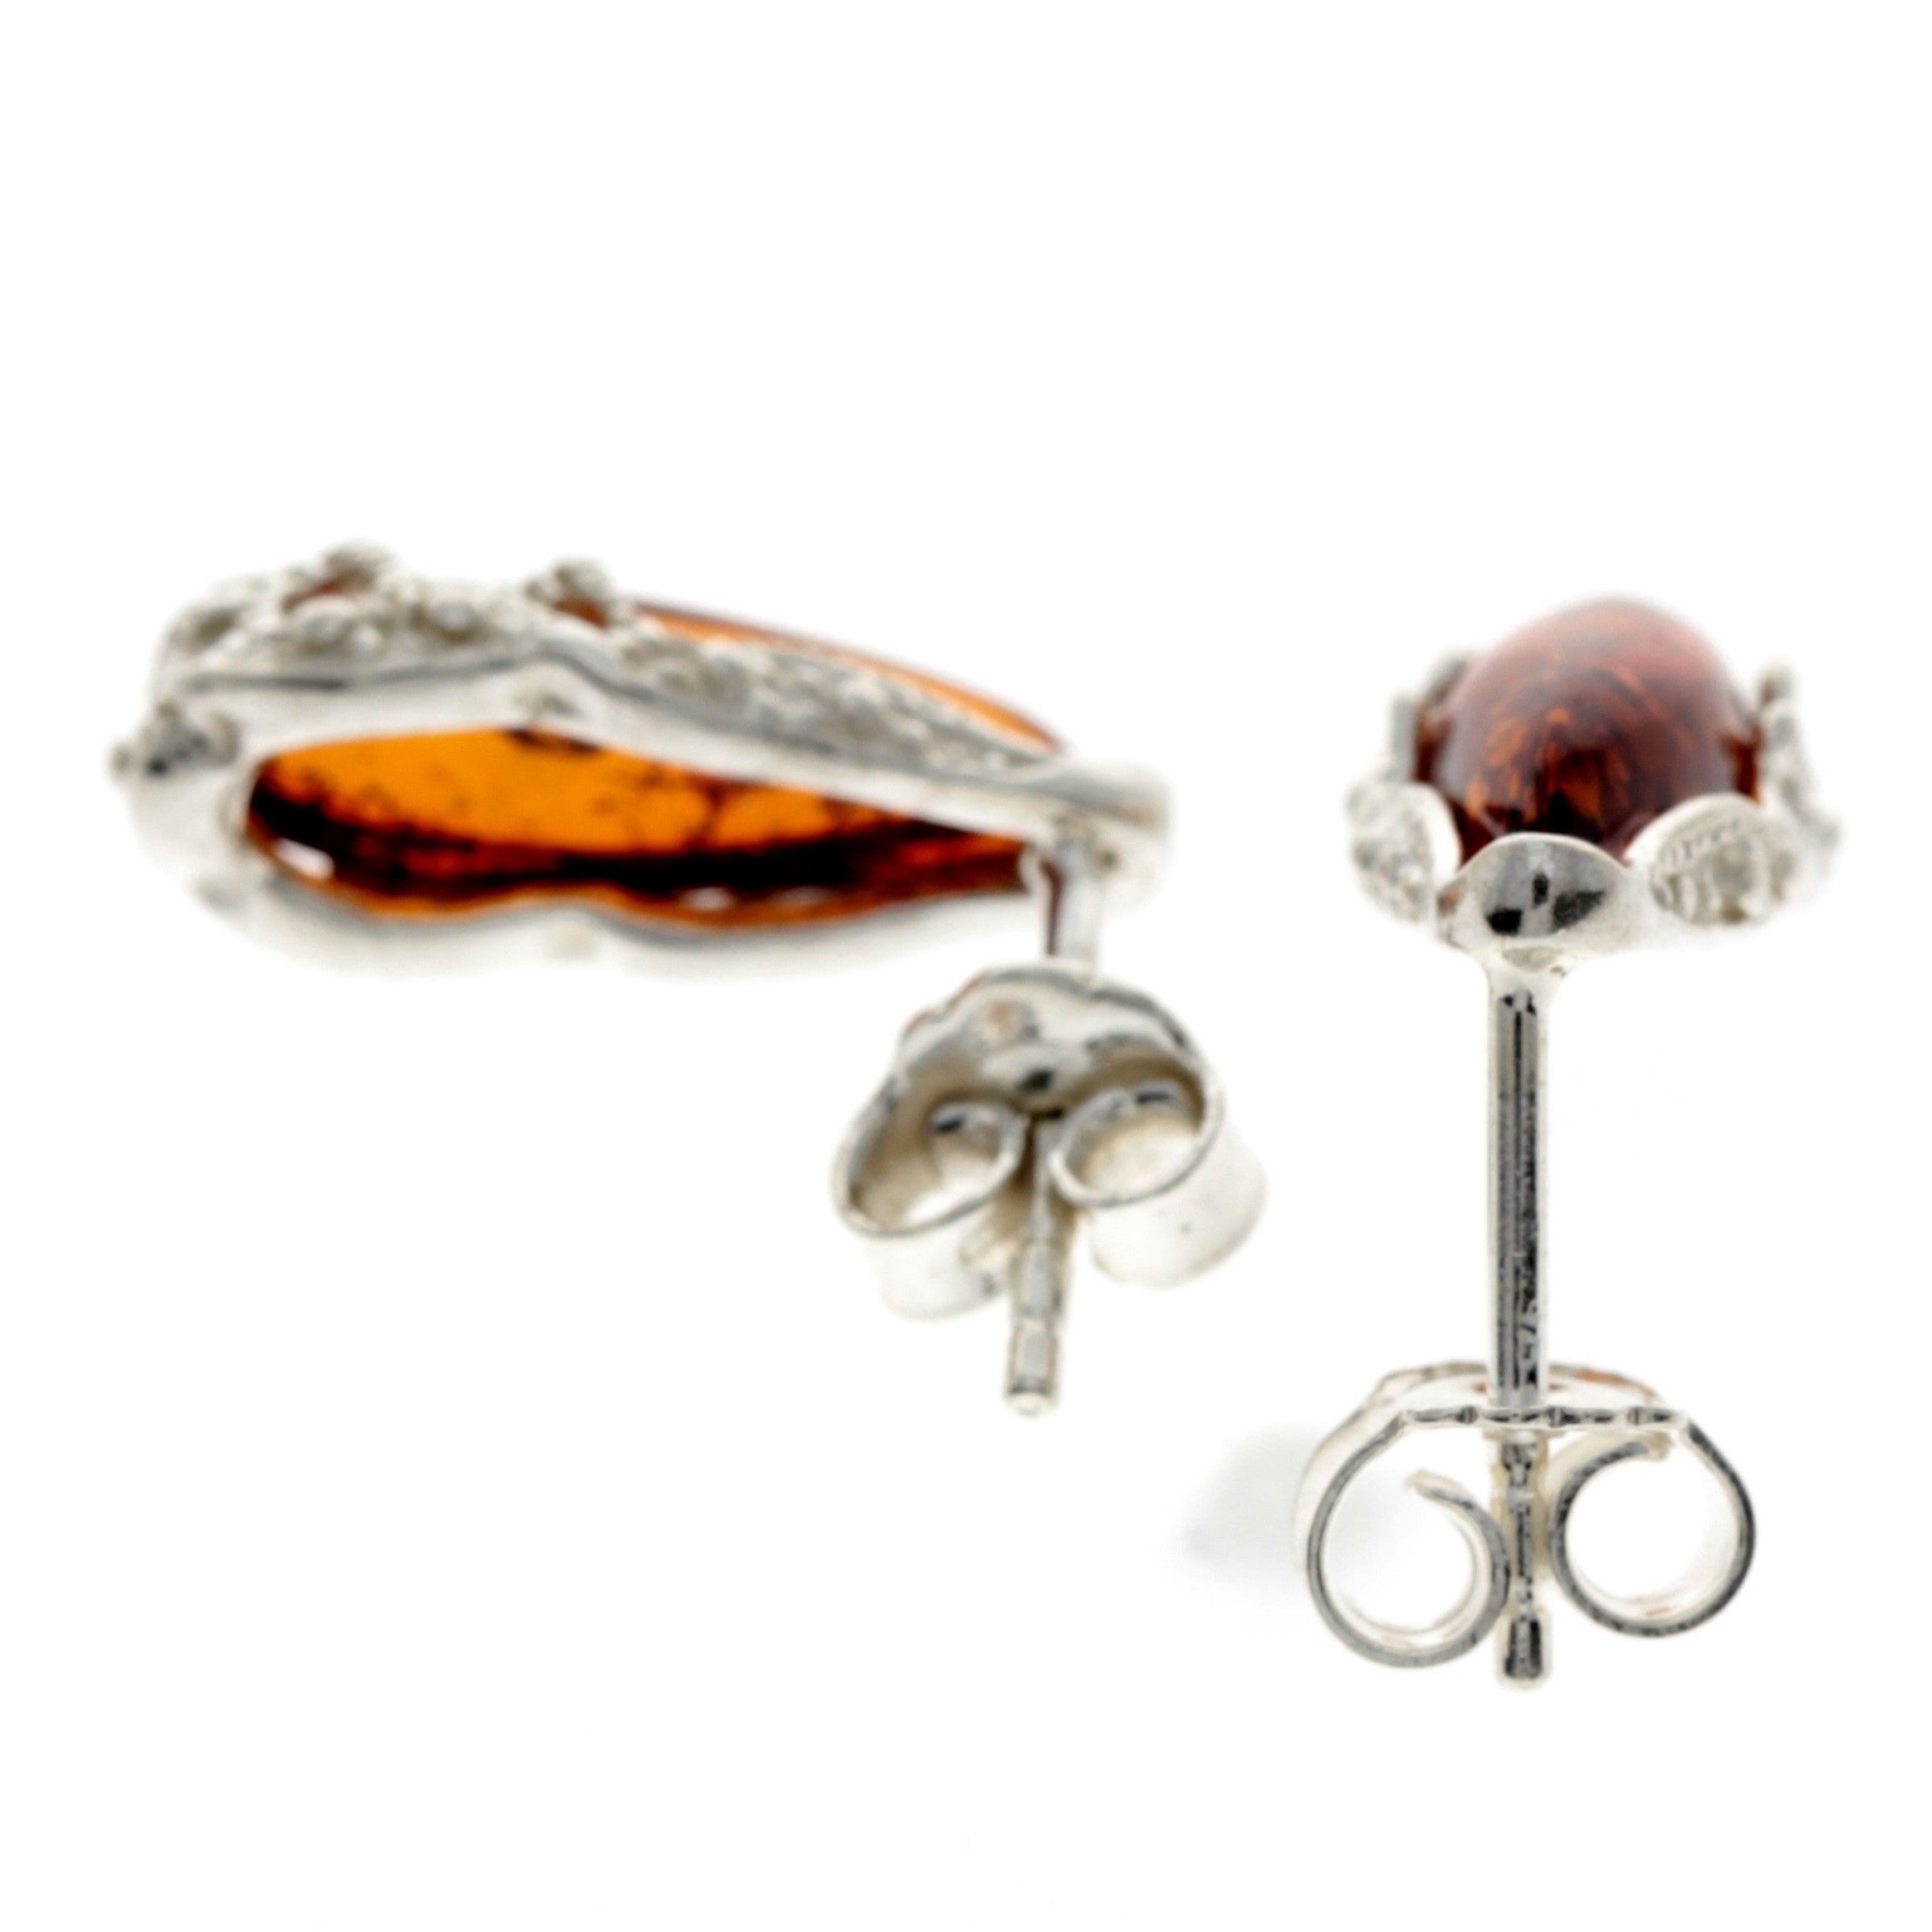 925 Sterling Silver & Baltic Amber Modern Teardrop Studs Earrings - G027